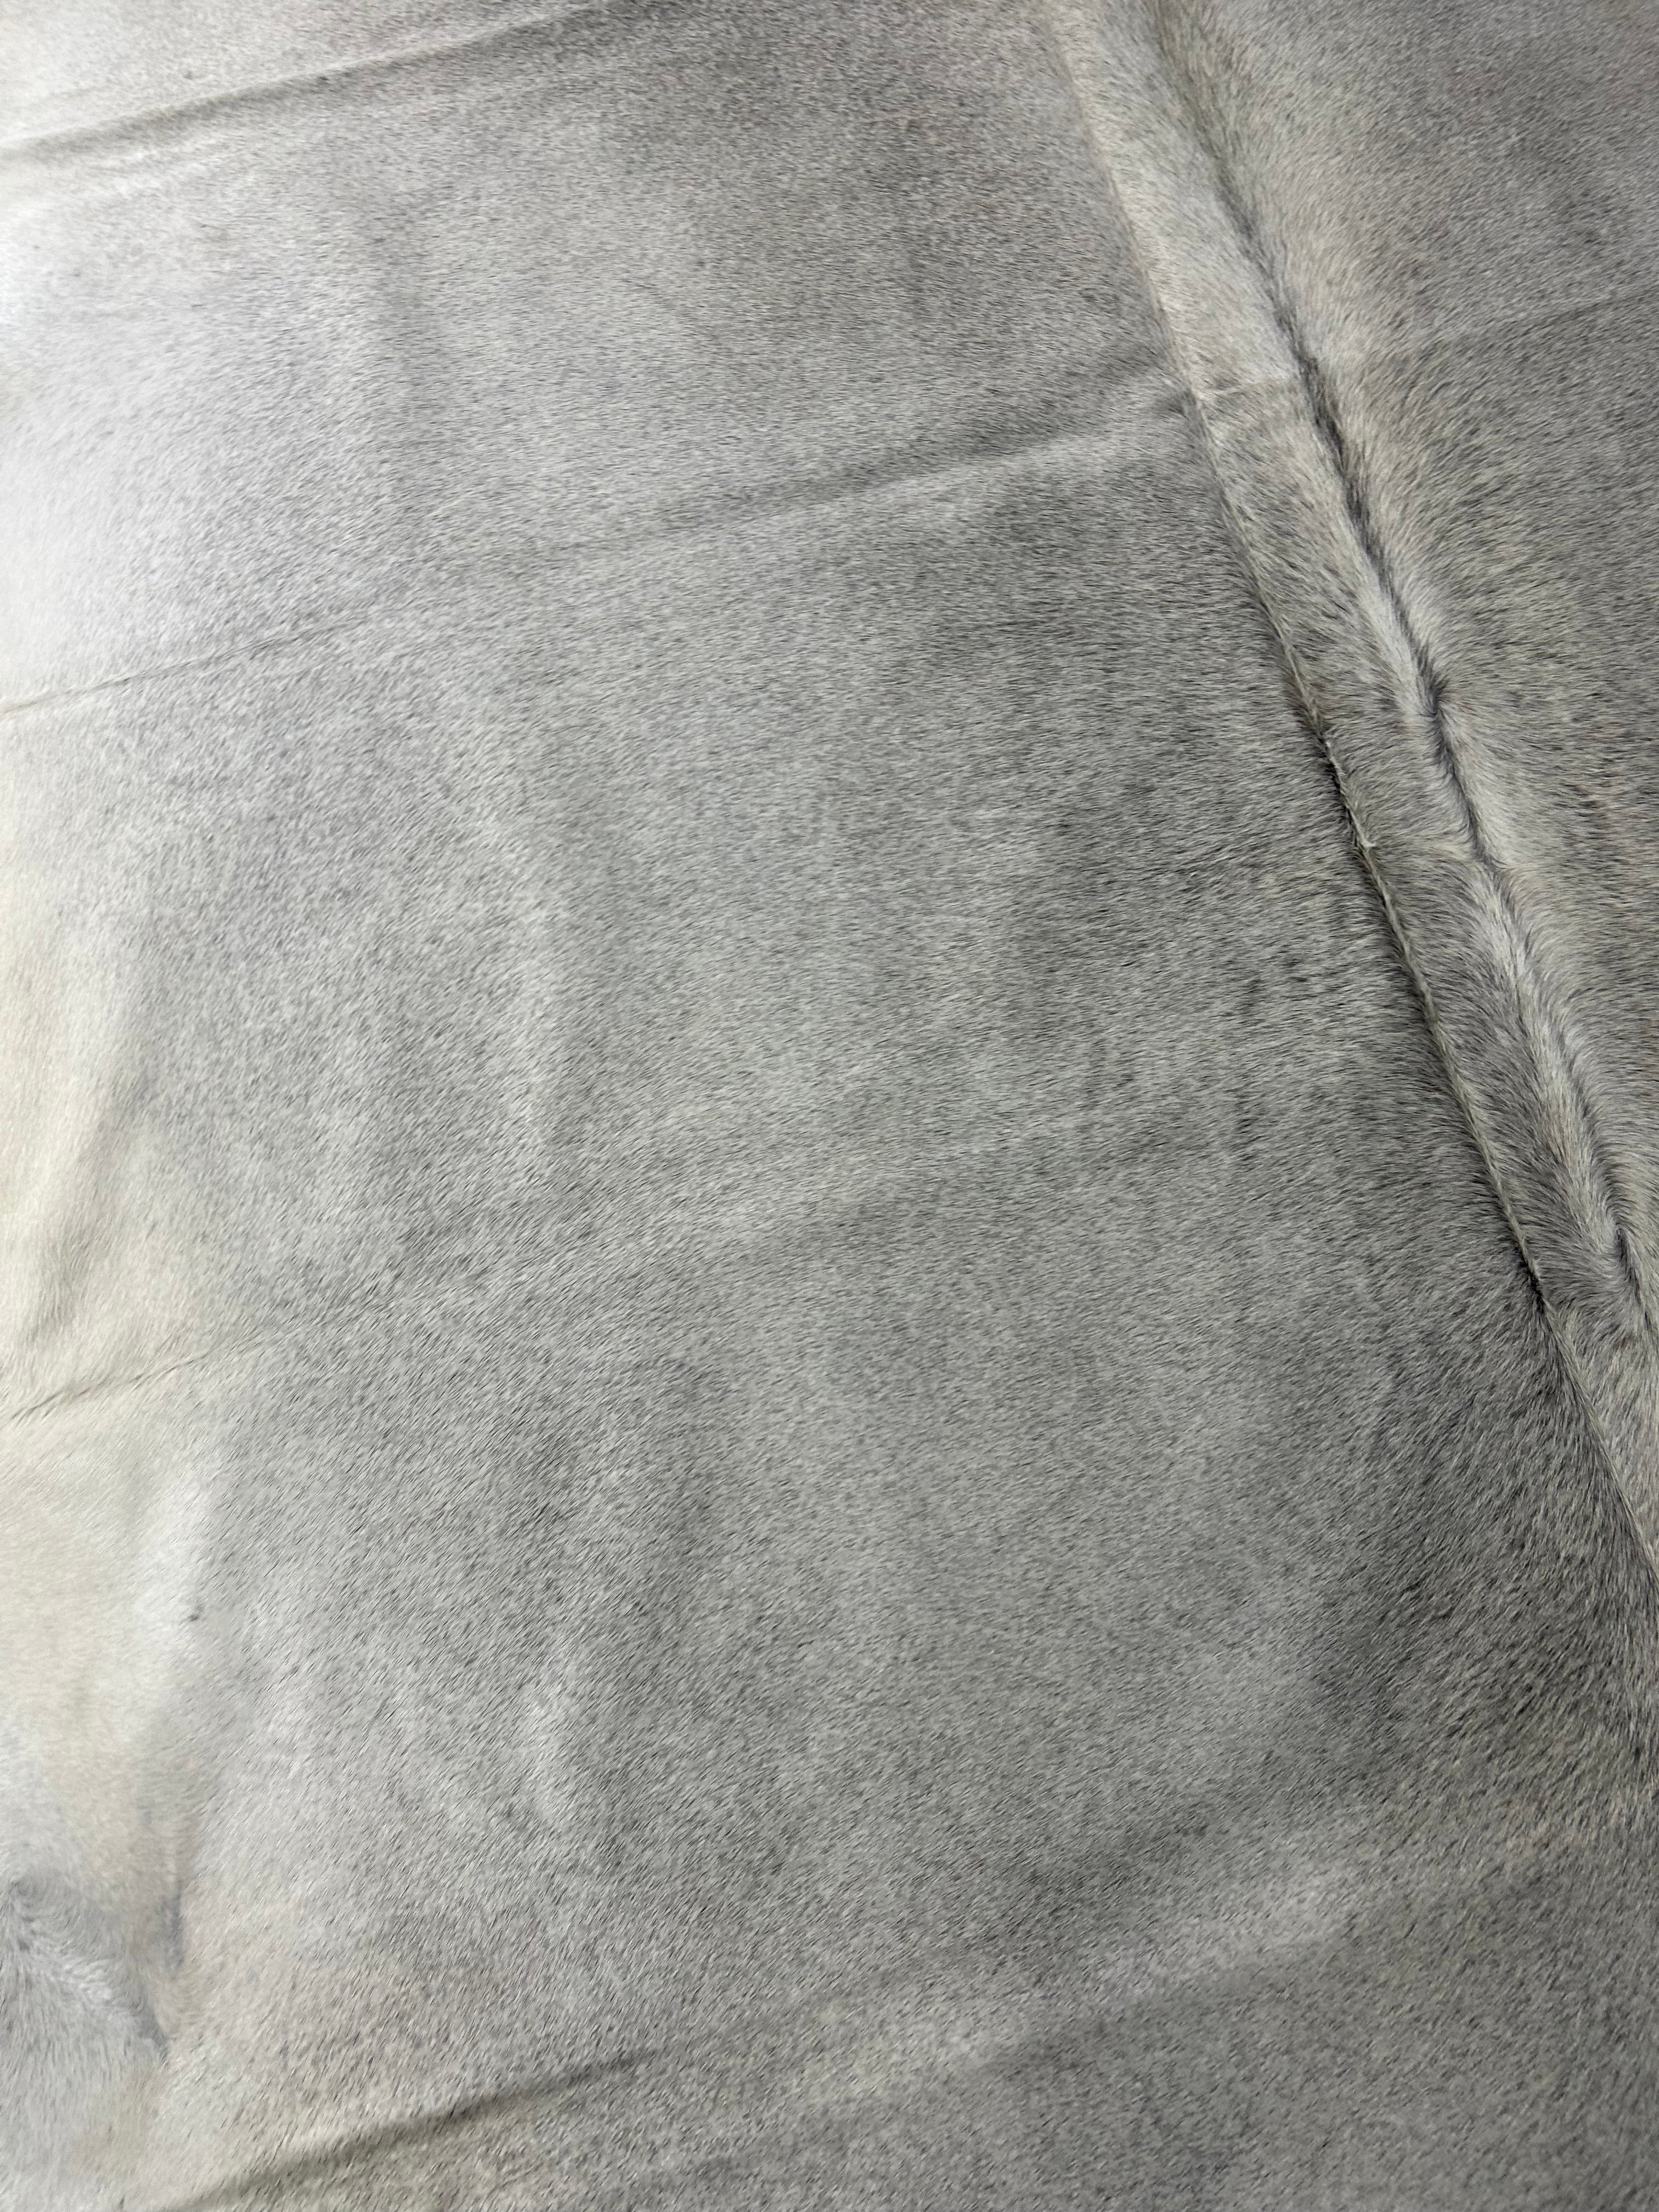 Solid Grey Cowhide Rug Size: 7x6.2 feet M-1685